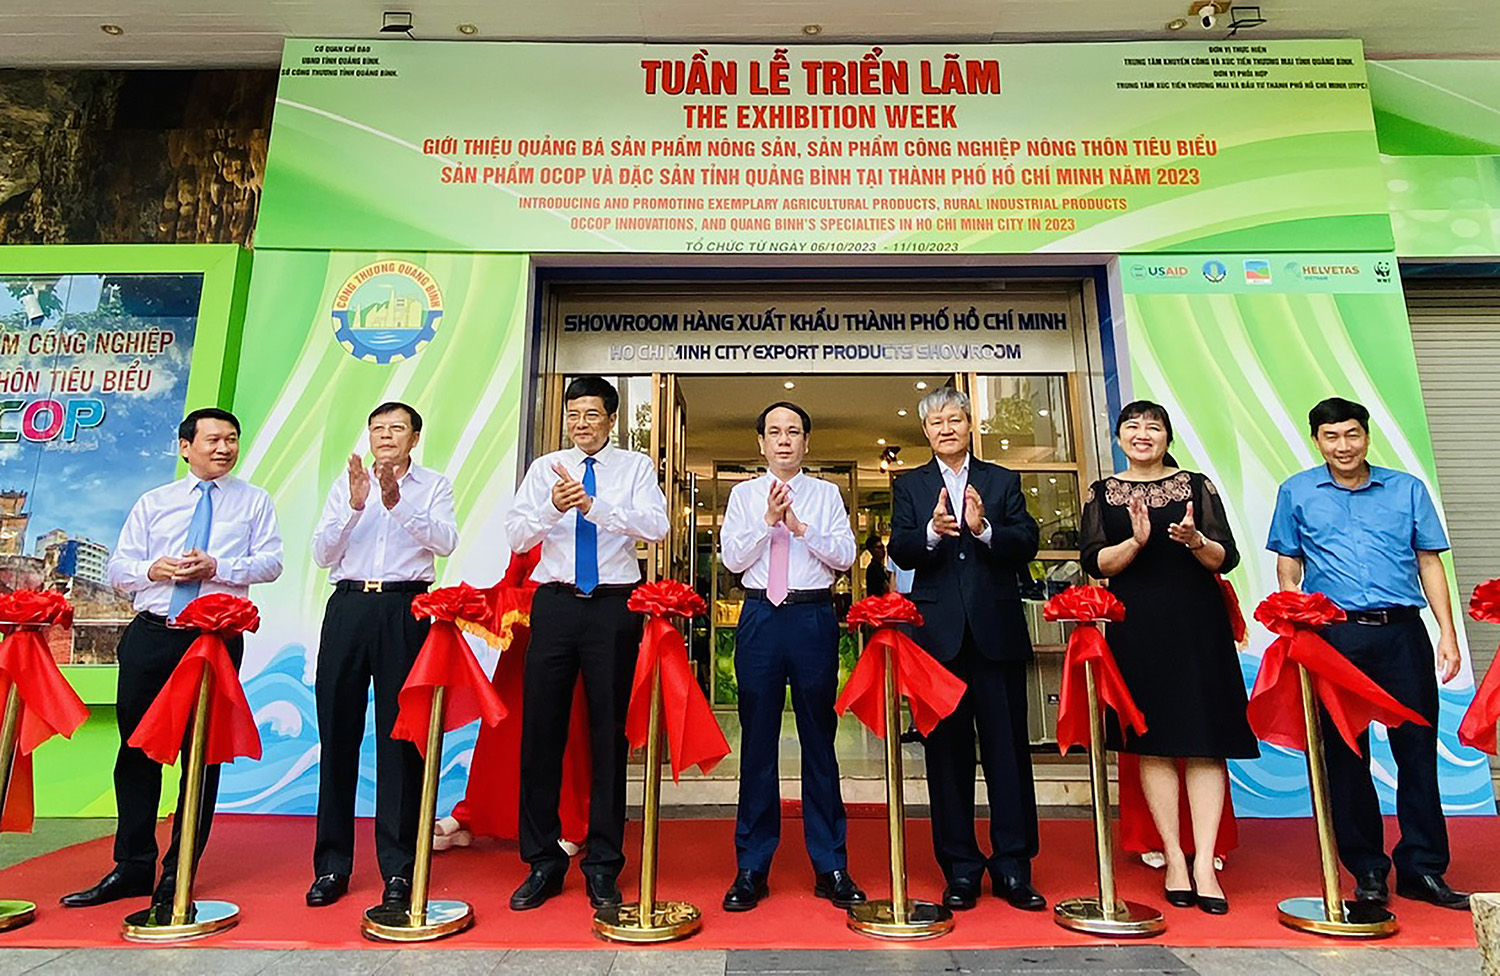 Giới thiệu hơn 100 chủng loại hàng hóa tiêu biểu của Quảng Bình tại TP. Hồ Chí Minh